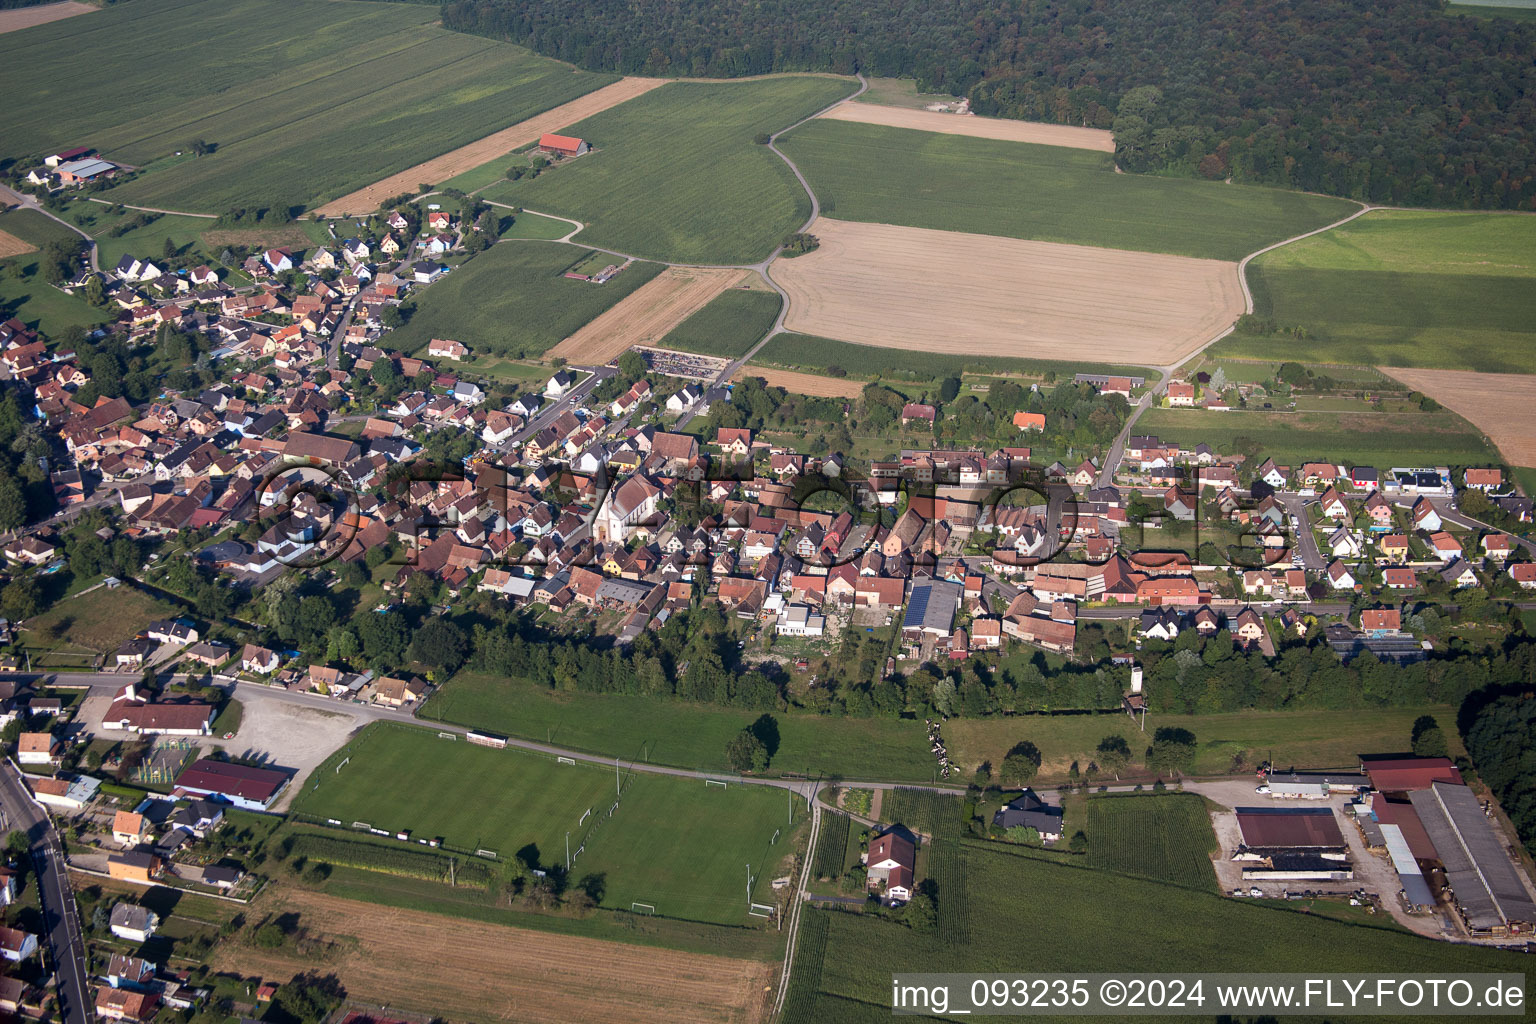 Vue oblique de Champs agricoles et surfaces utilisables à Herbsheim dans le département Bas Rhin, France